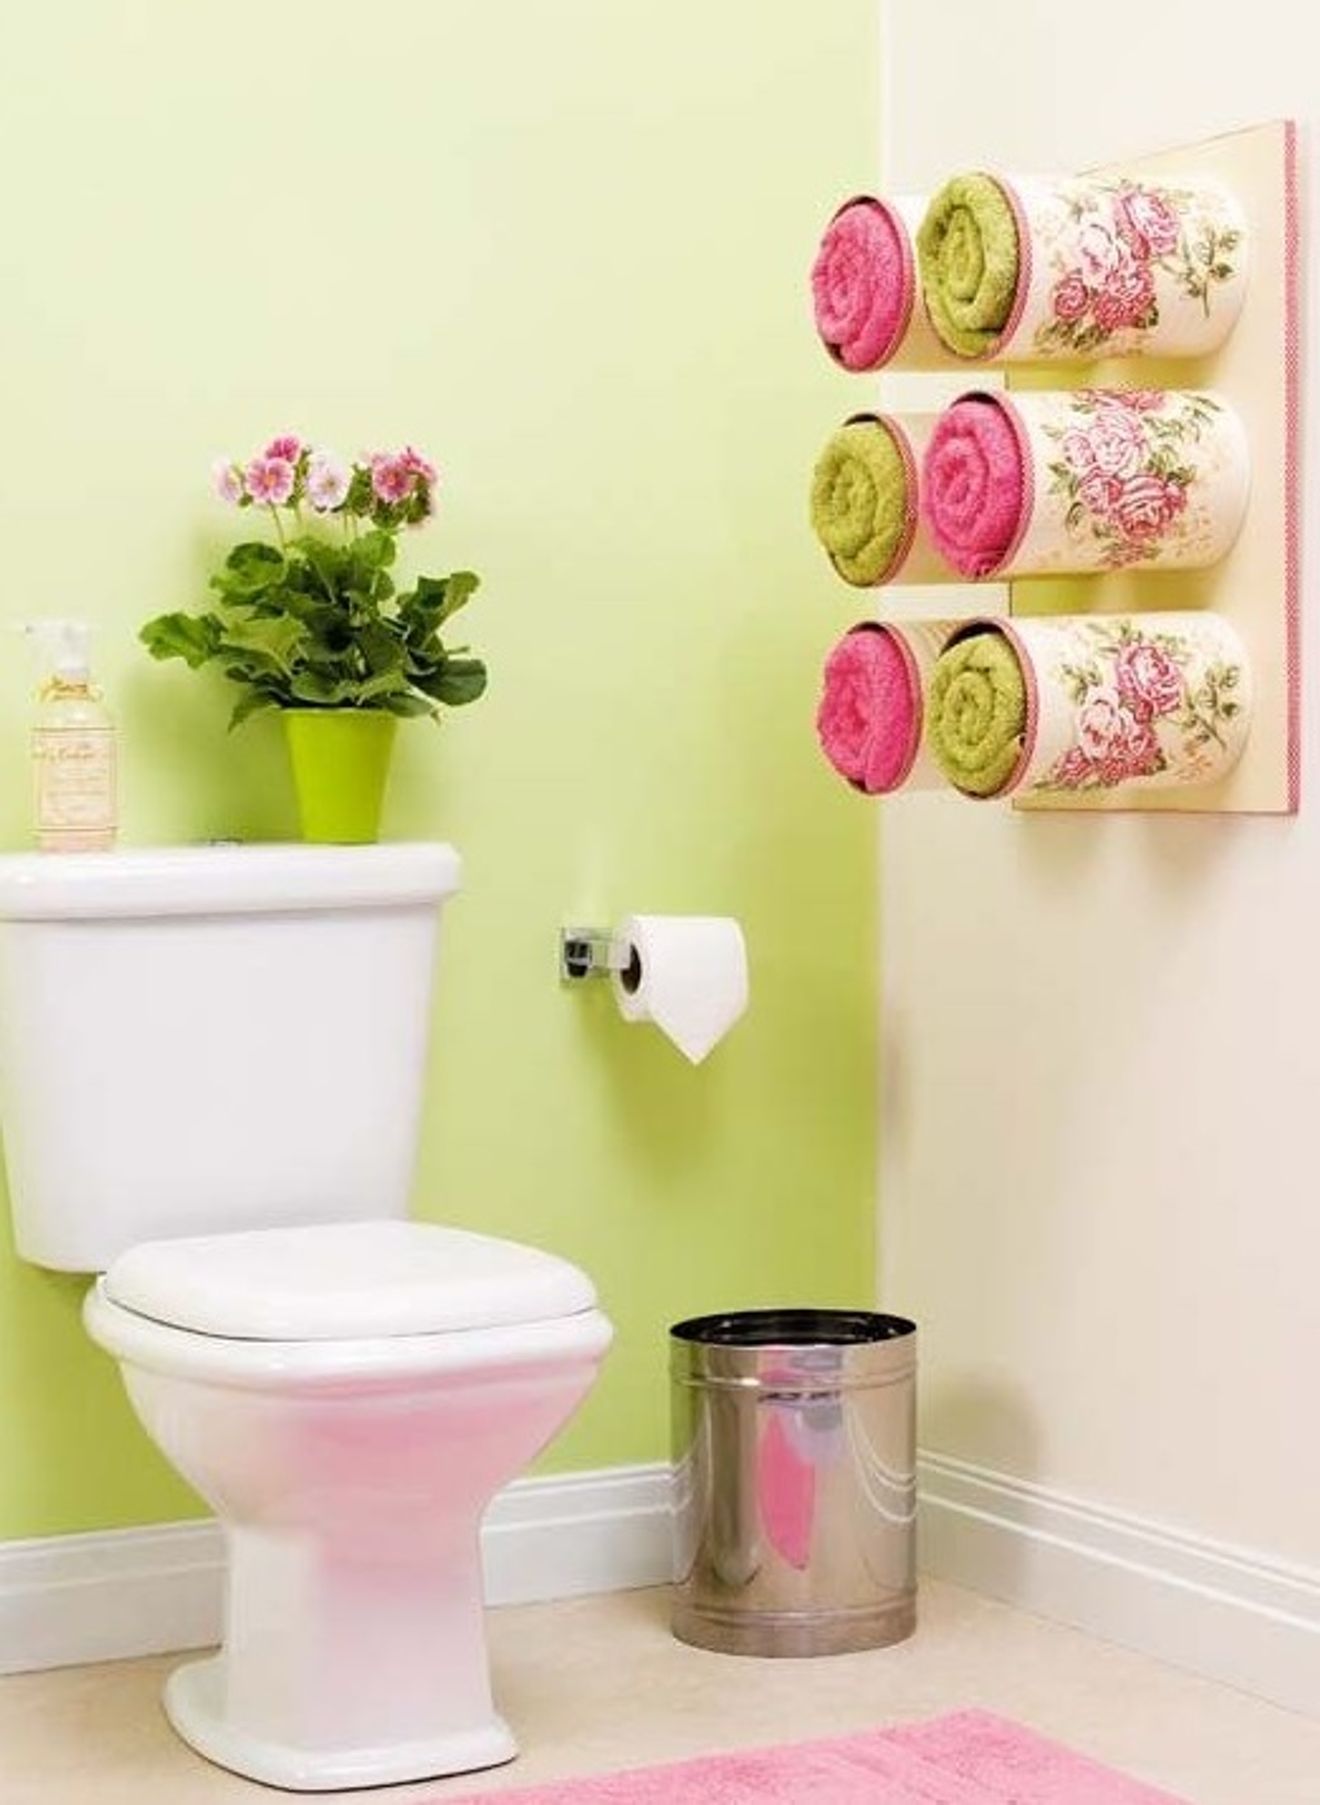 9 ý tưởng cải tạo phòng tắm đơn giản đến kinh ngạc bạn có thể tự làm - Ảnh 6.